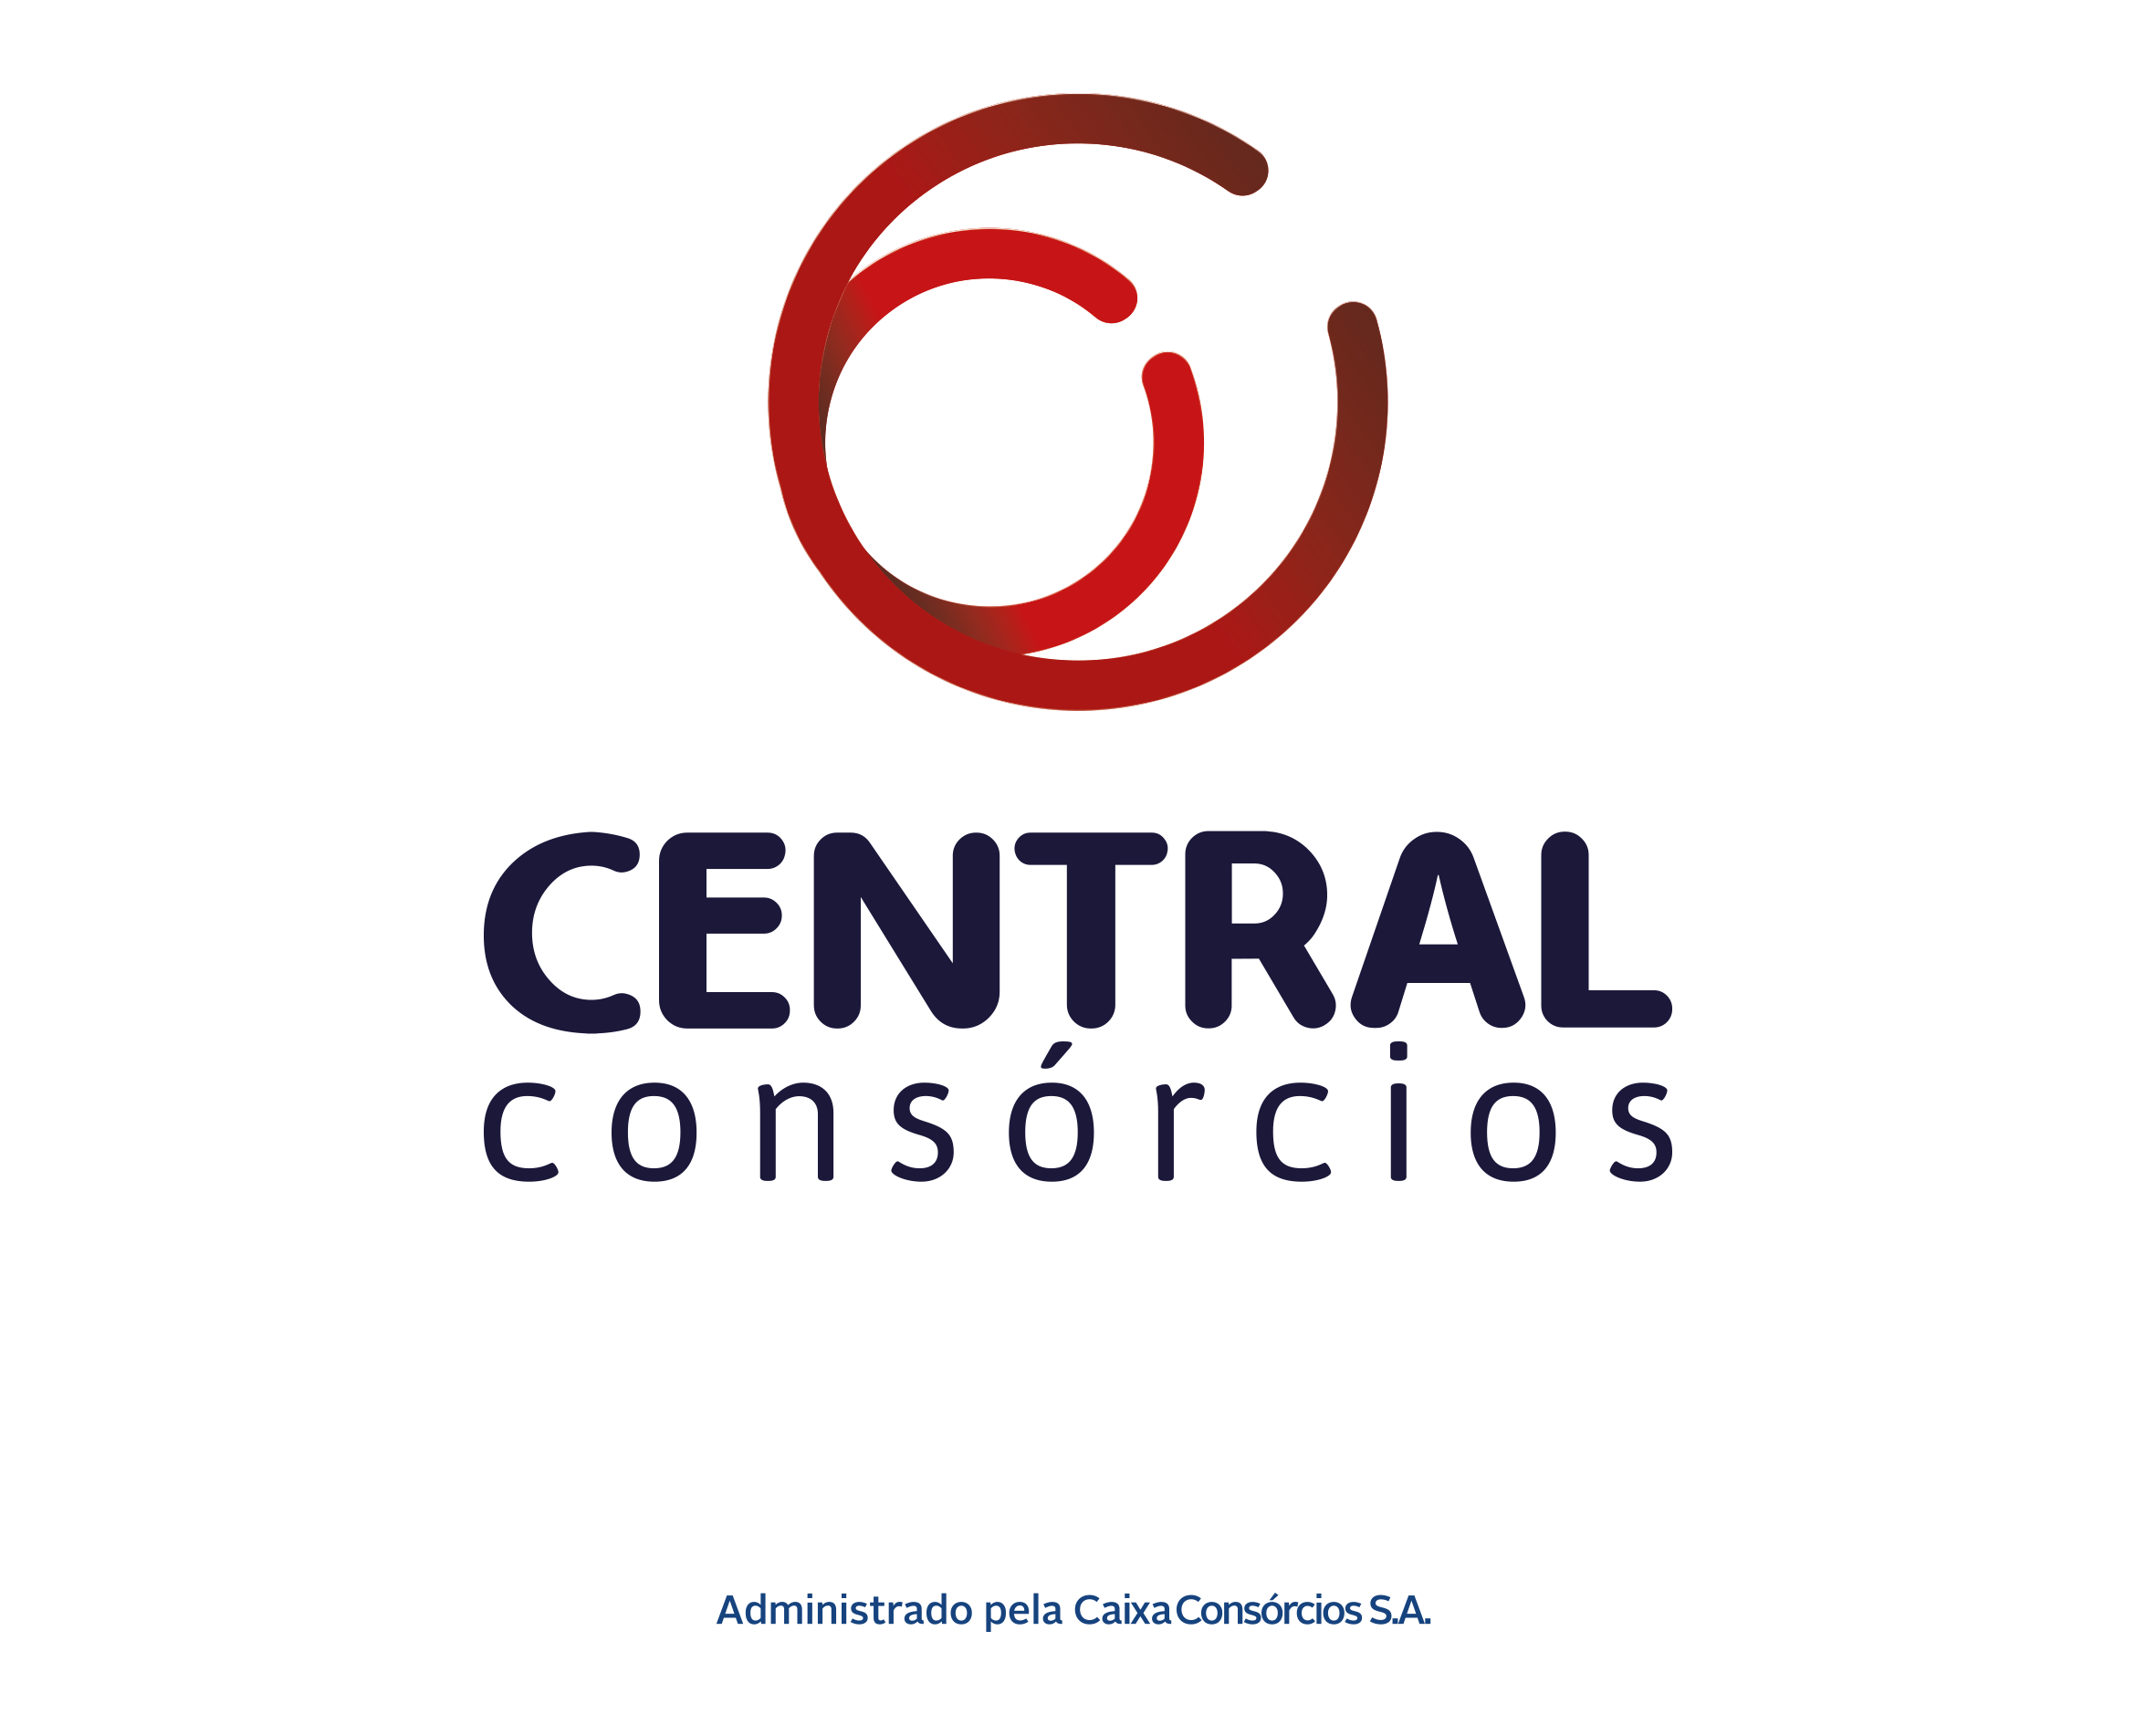 CENTRAL CONSÓRCIOS